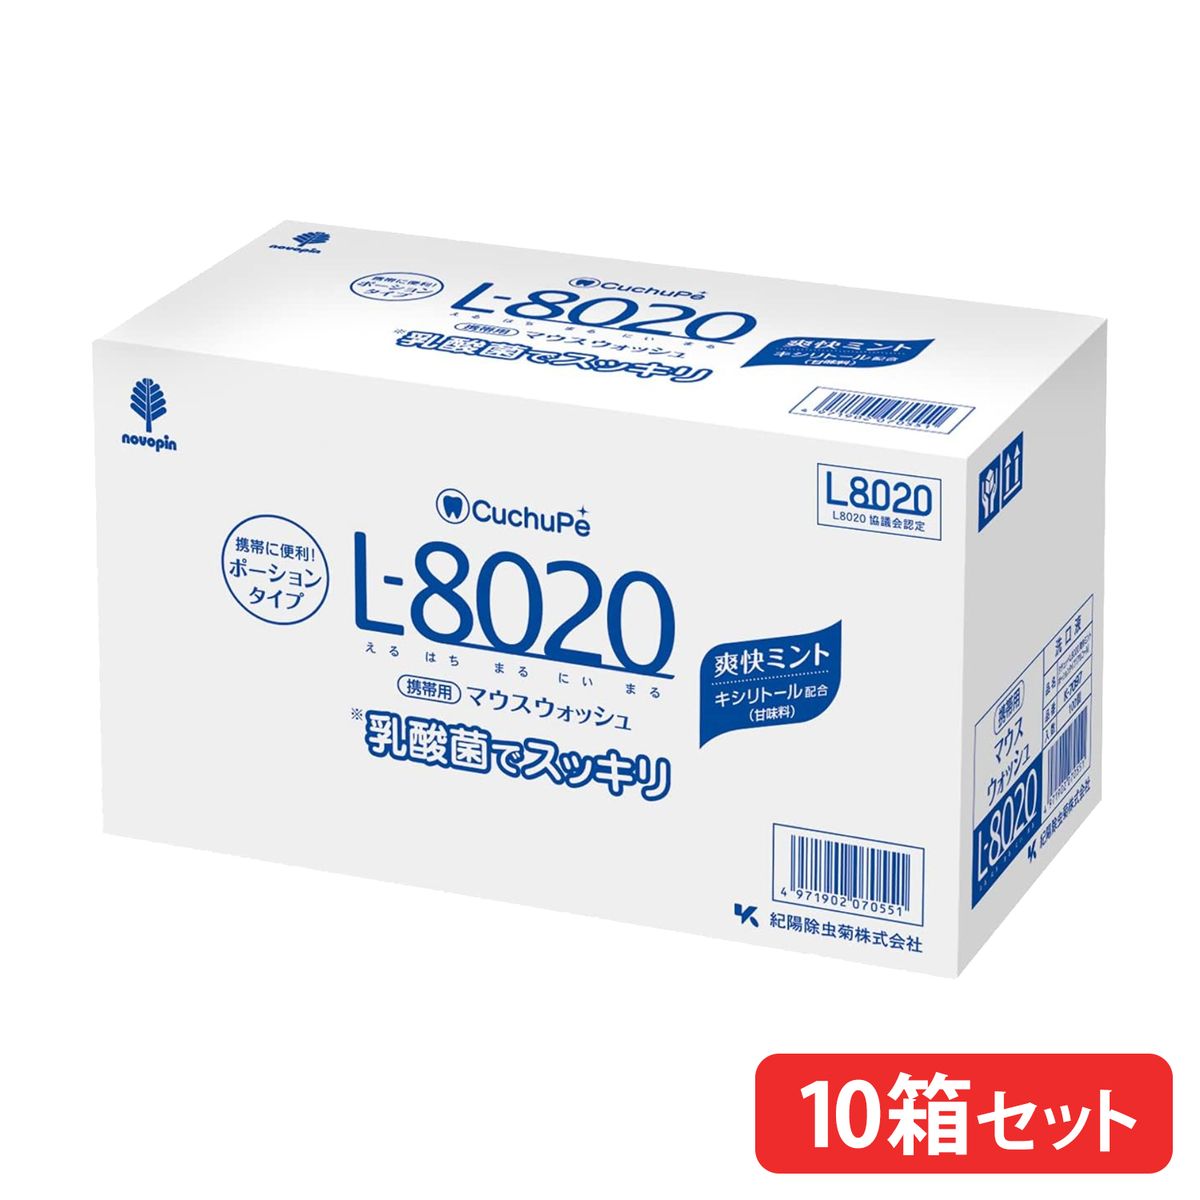 【10箱まとめ買い】マウスウォッシュ クチュッペL-8020 爽快ミント ポーションタイプ100個入 アルコール